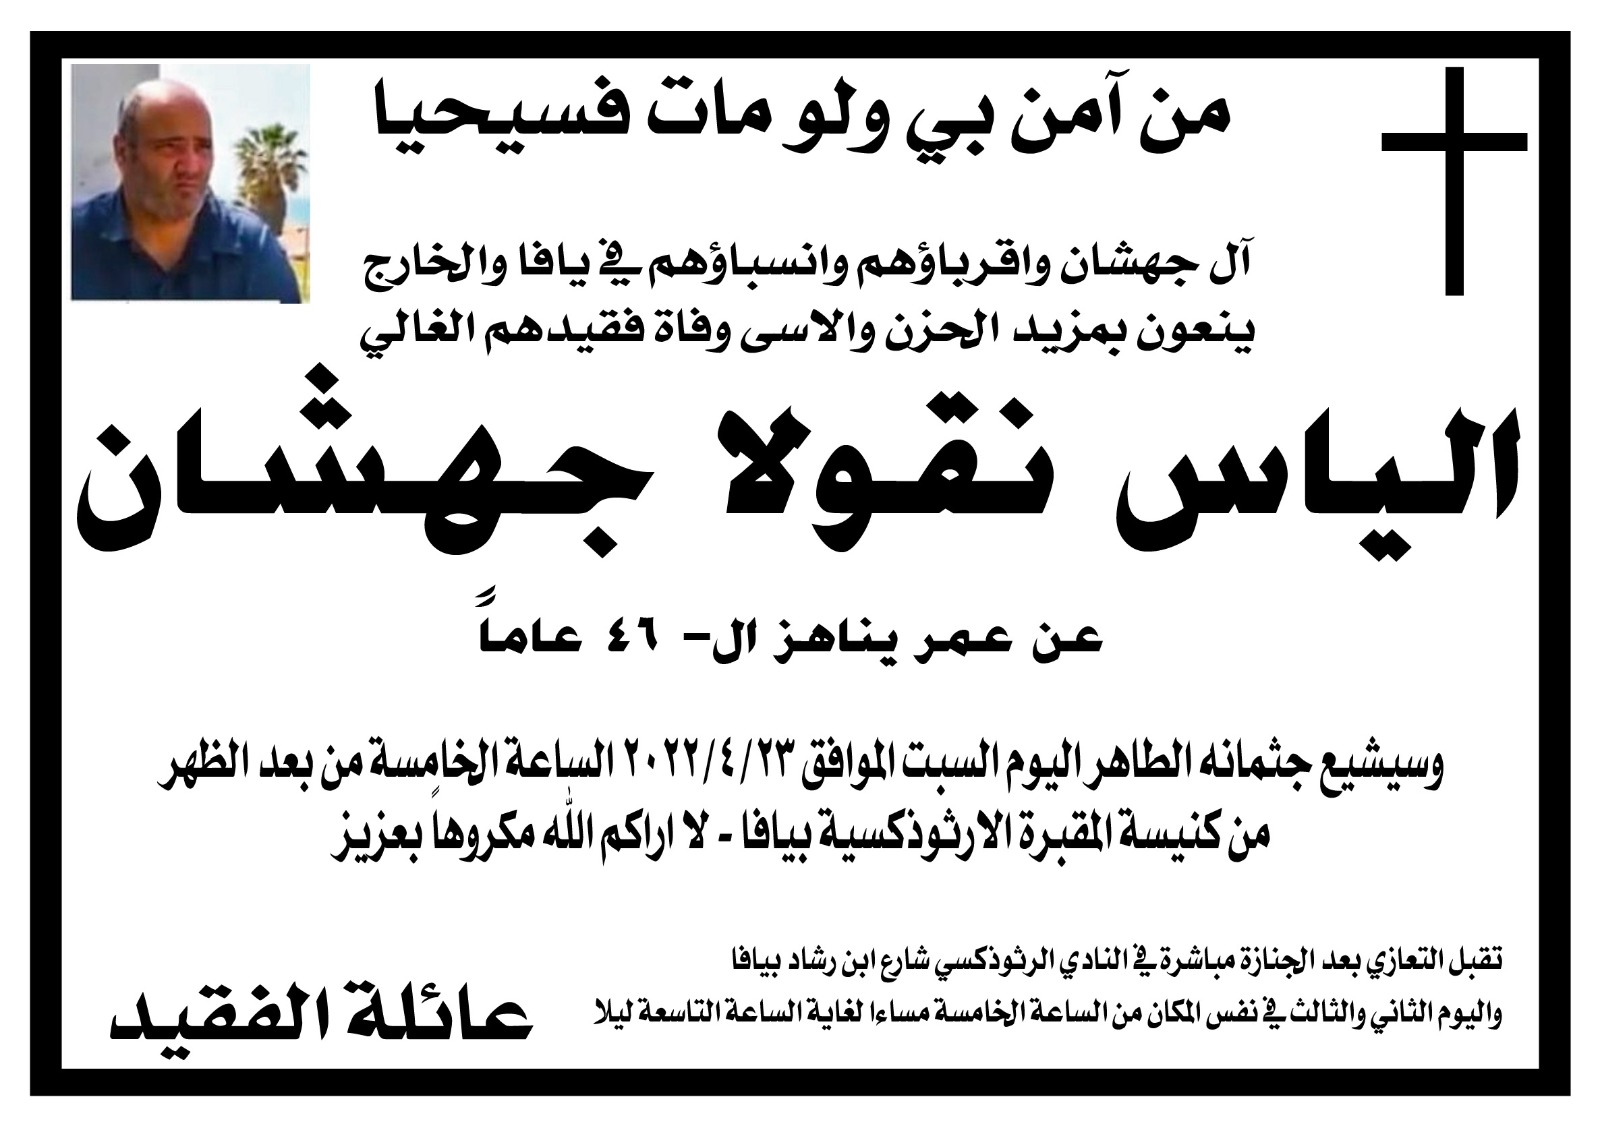 يافا: الاعلان عن موعد تشييع جثمان الشاب الياس جهشان 